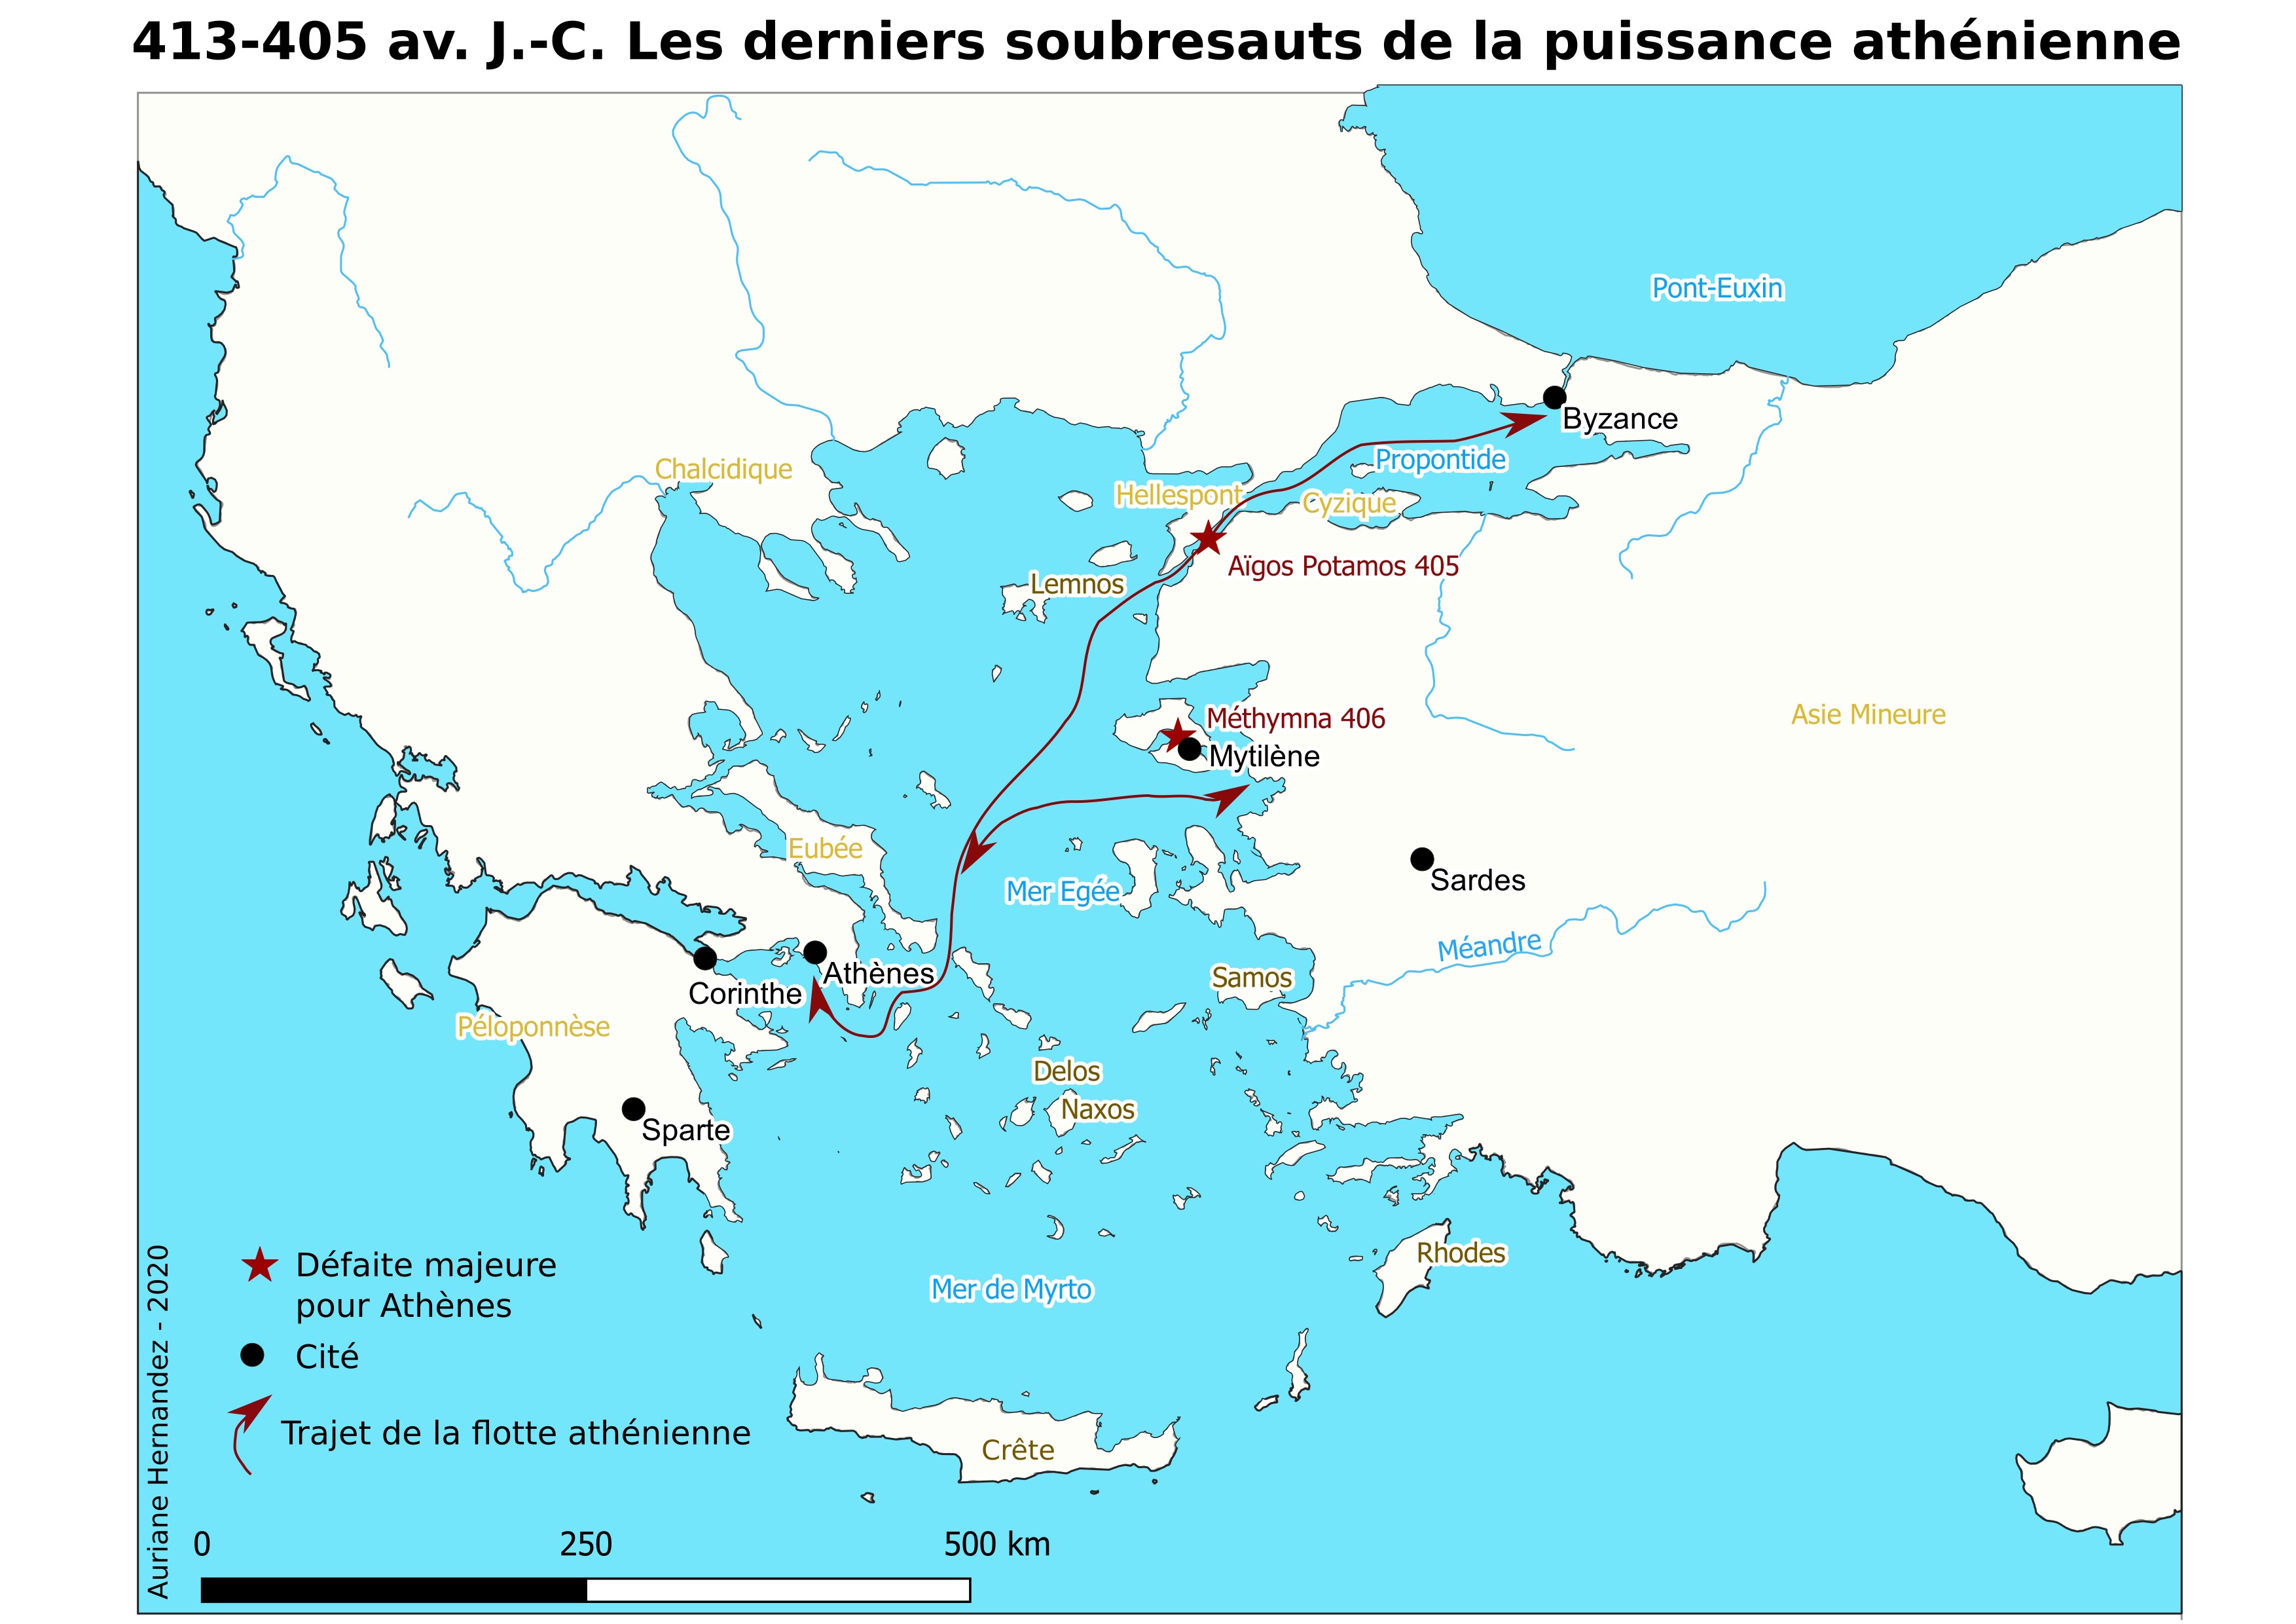 Carte 1 - Les derniers soubresauts de la puissance athénienne